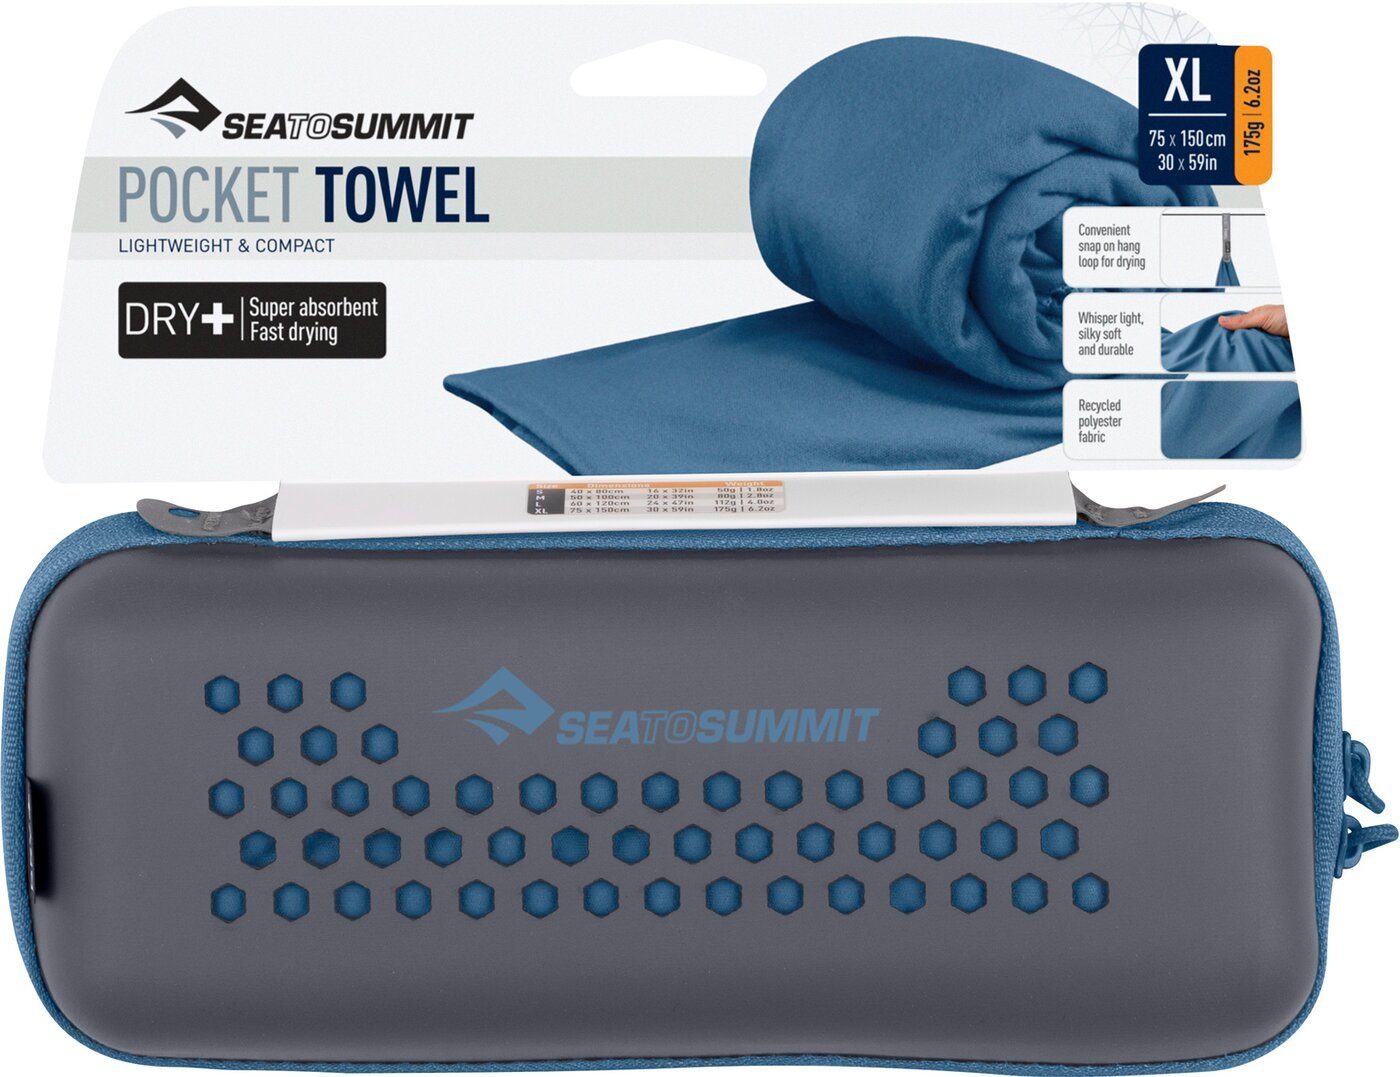 Handtuch MOONLIGHT to summit Towel Pocket sea